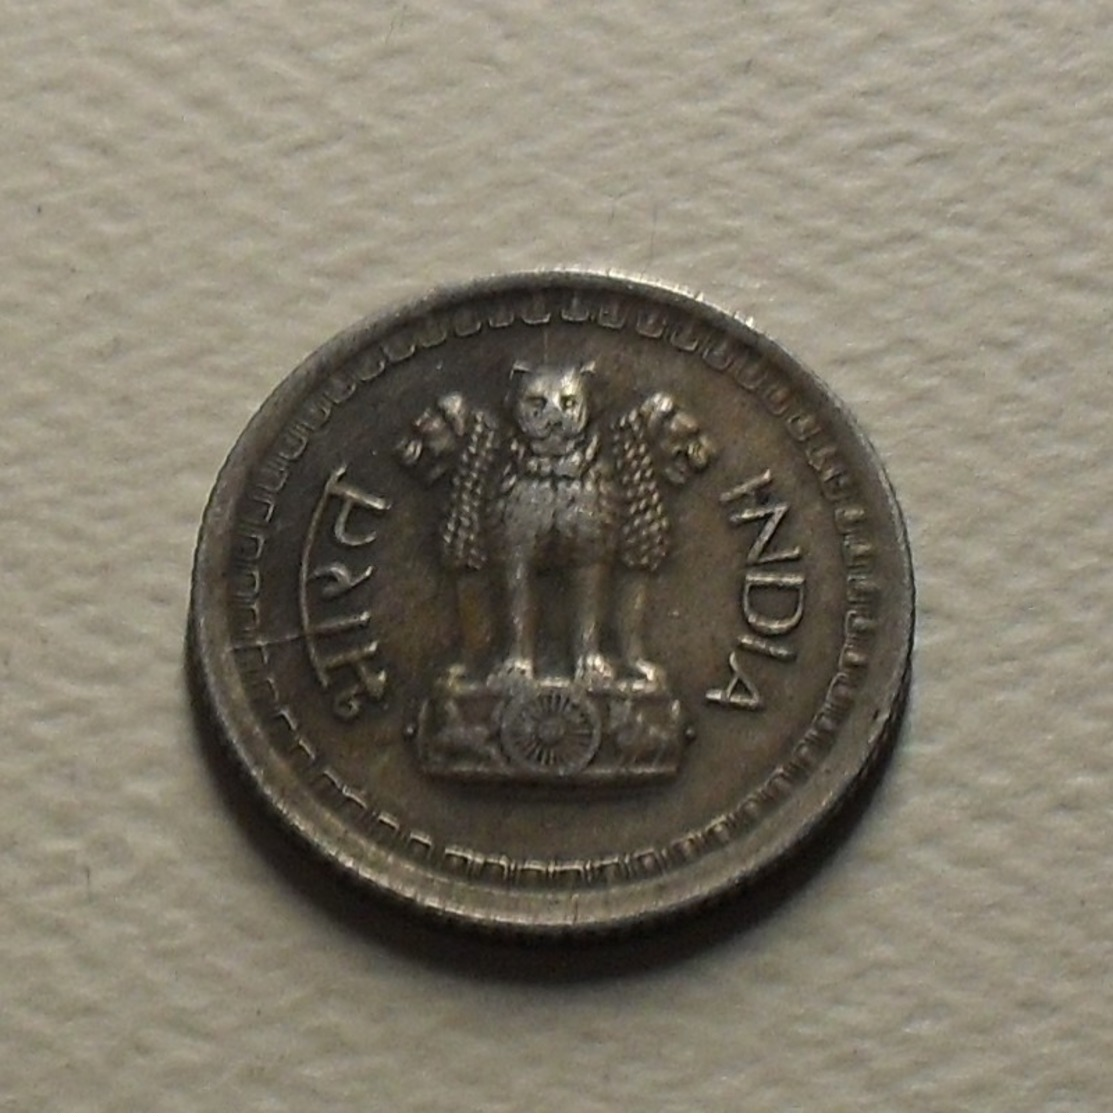 1972 - Inde République - India Republic - 25 PAISE, B, KM 49.1 - Inde